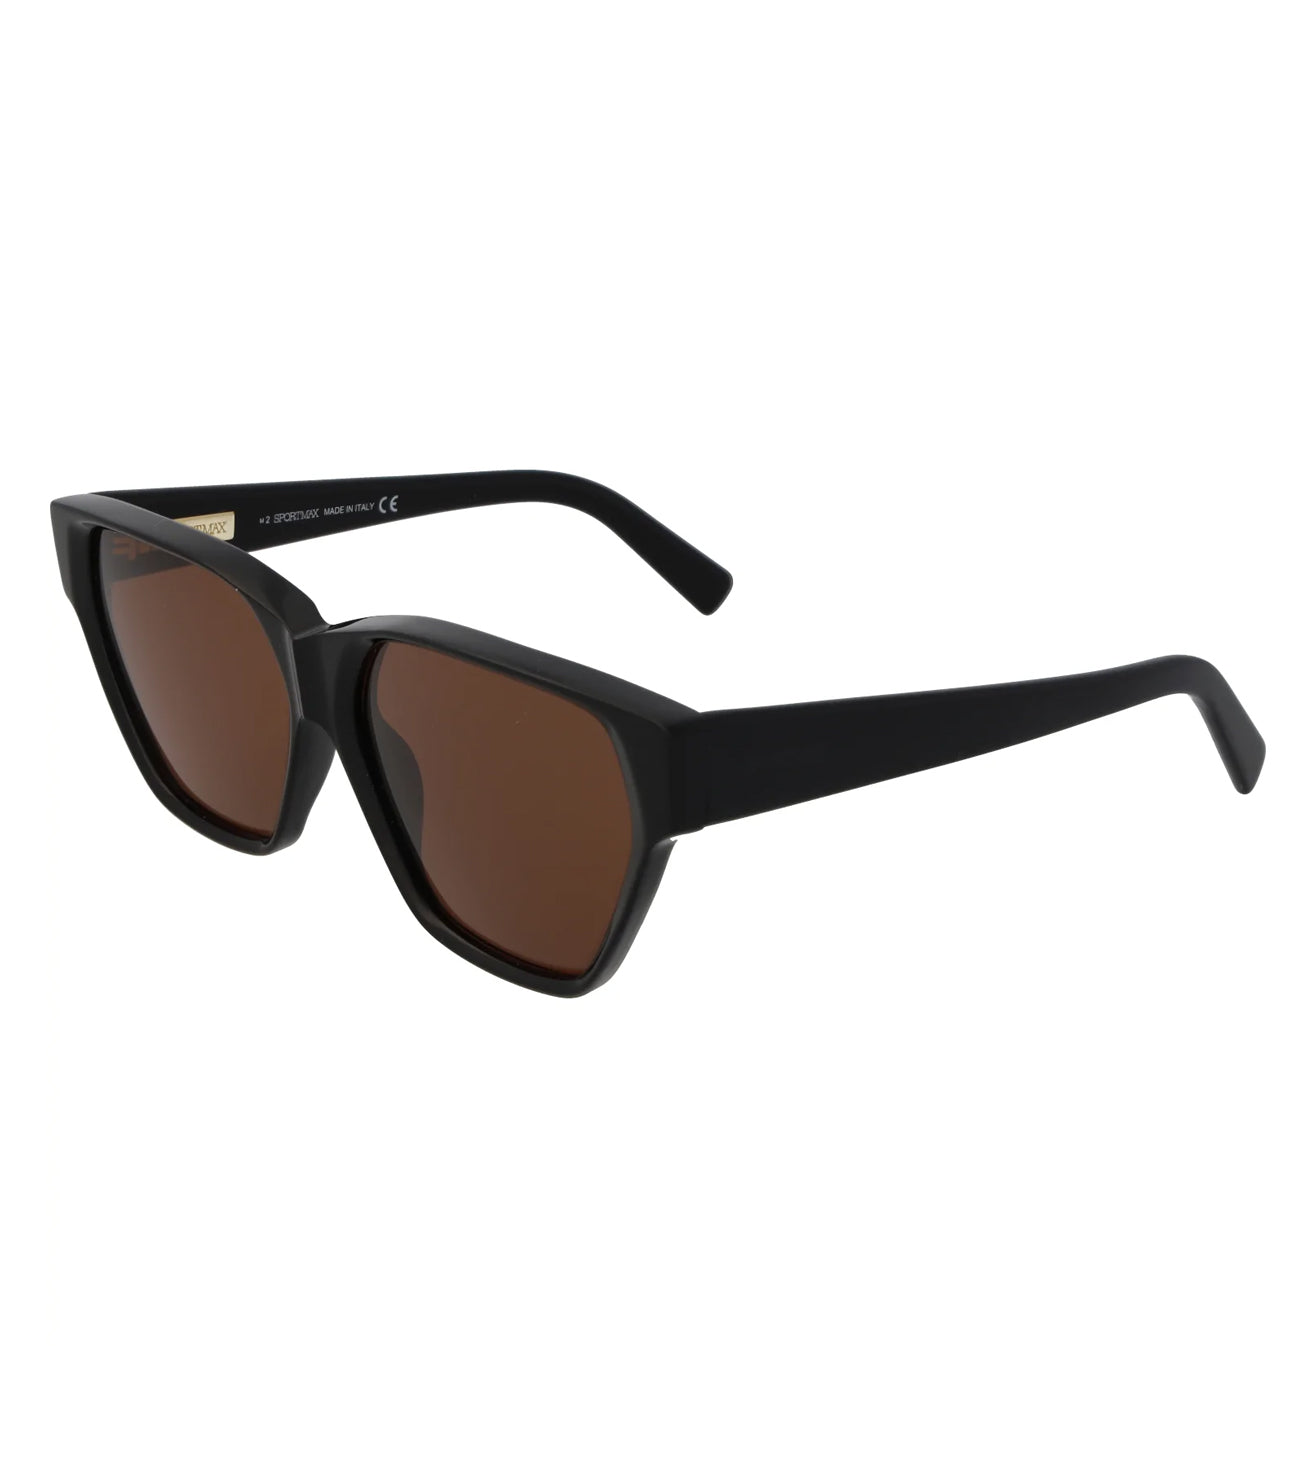 Square Black Brown Max Mara Sunglasses